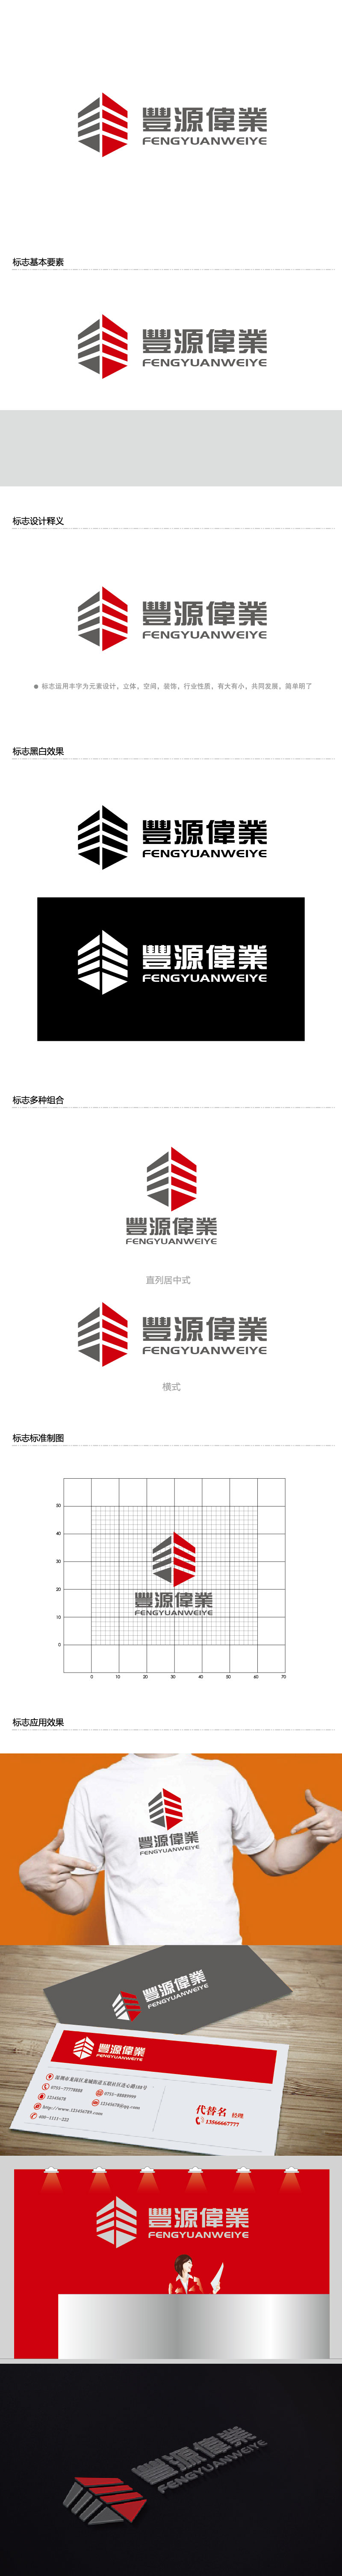 李贺的北京丰源伟业建筑装饰工程有限公司logo设计